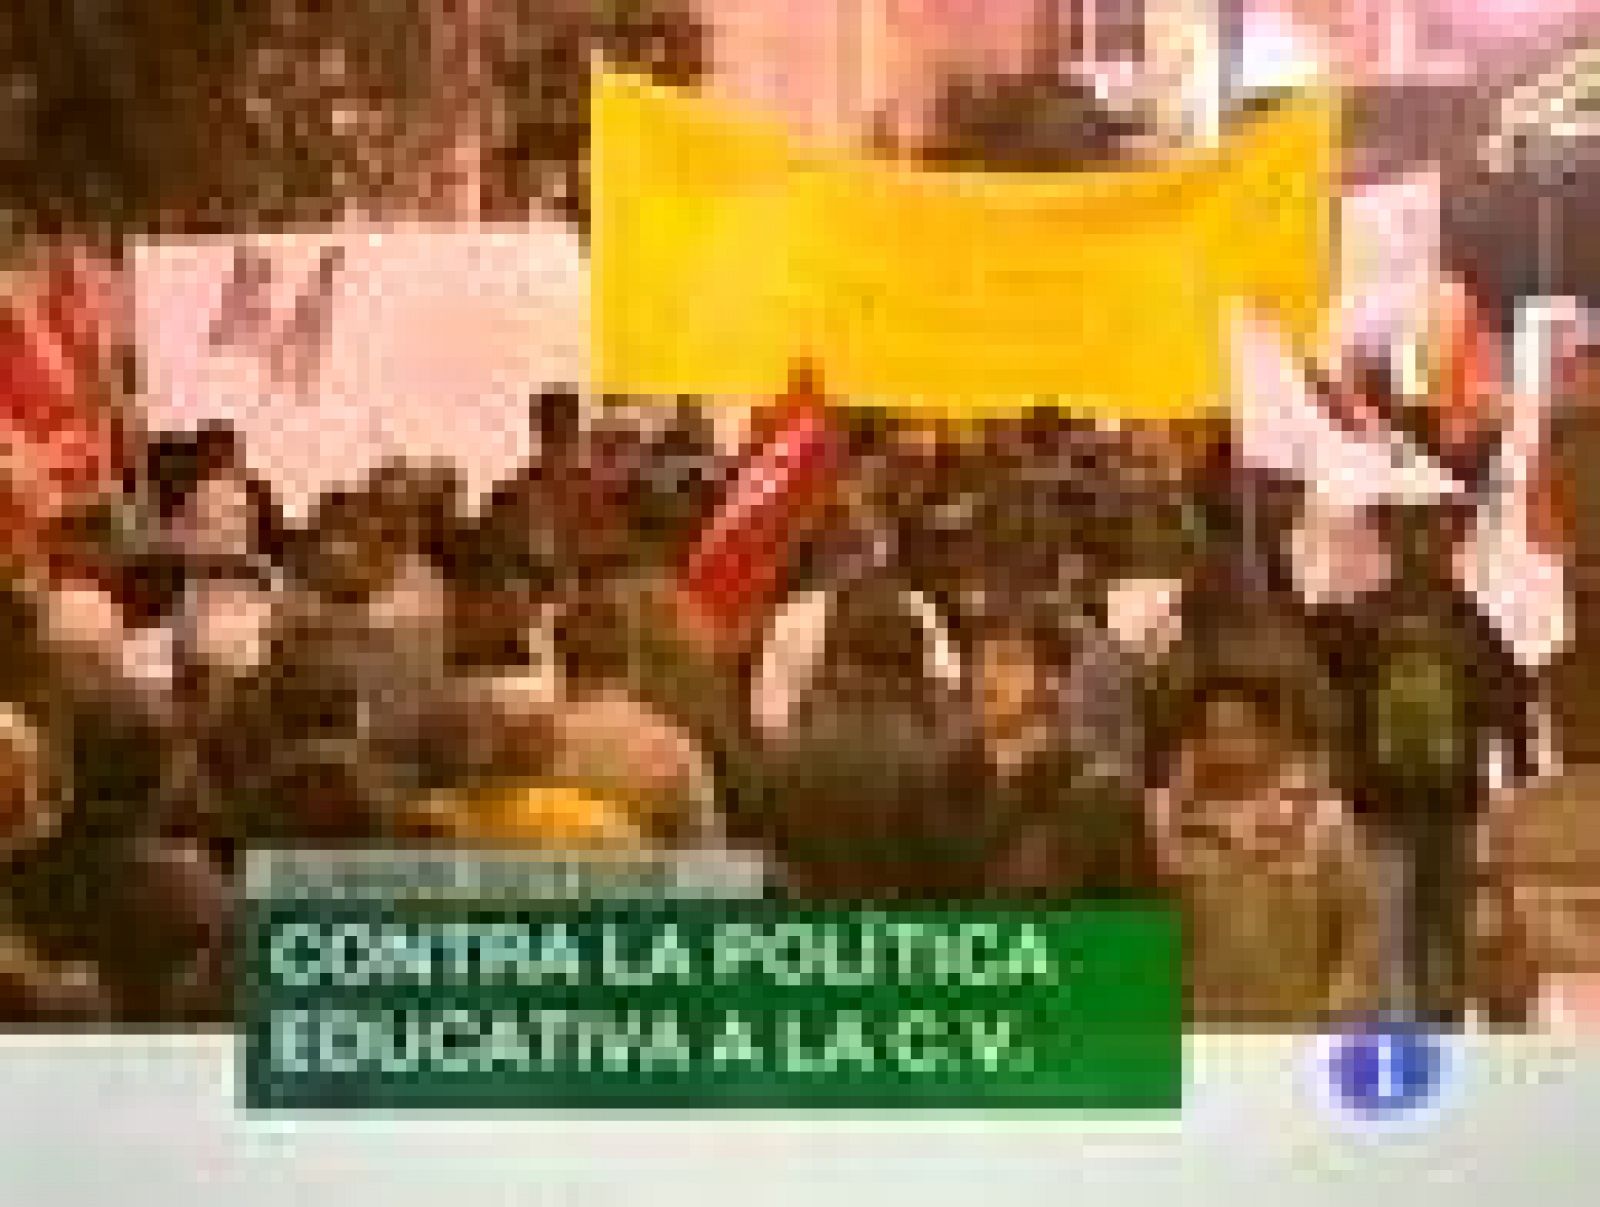 L'informatiu - Comunitat Valenciana: L'informatiu Comunitat Valenciana - 02/12/09 | RTVE Play